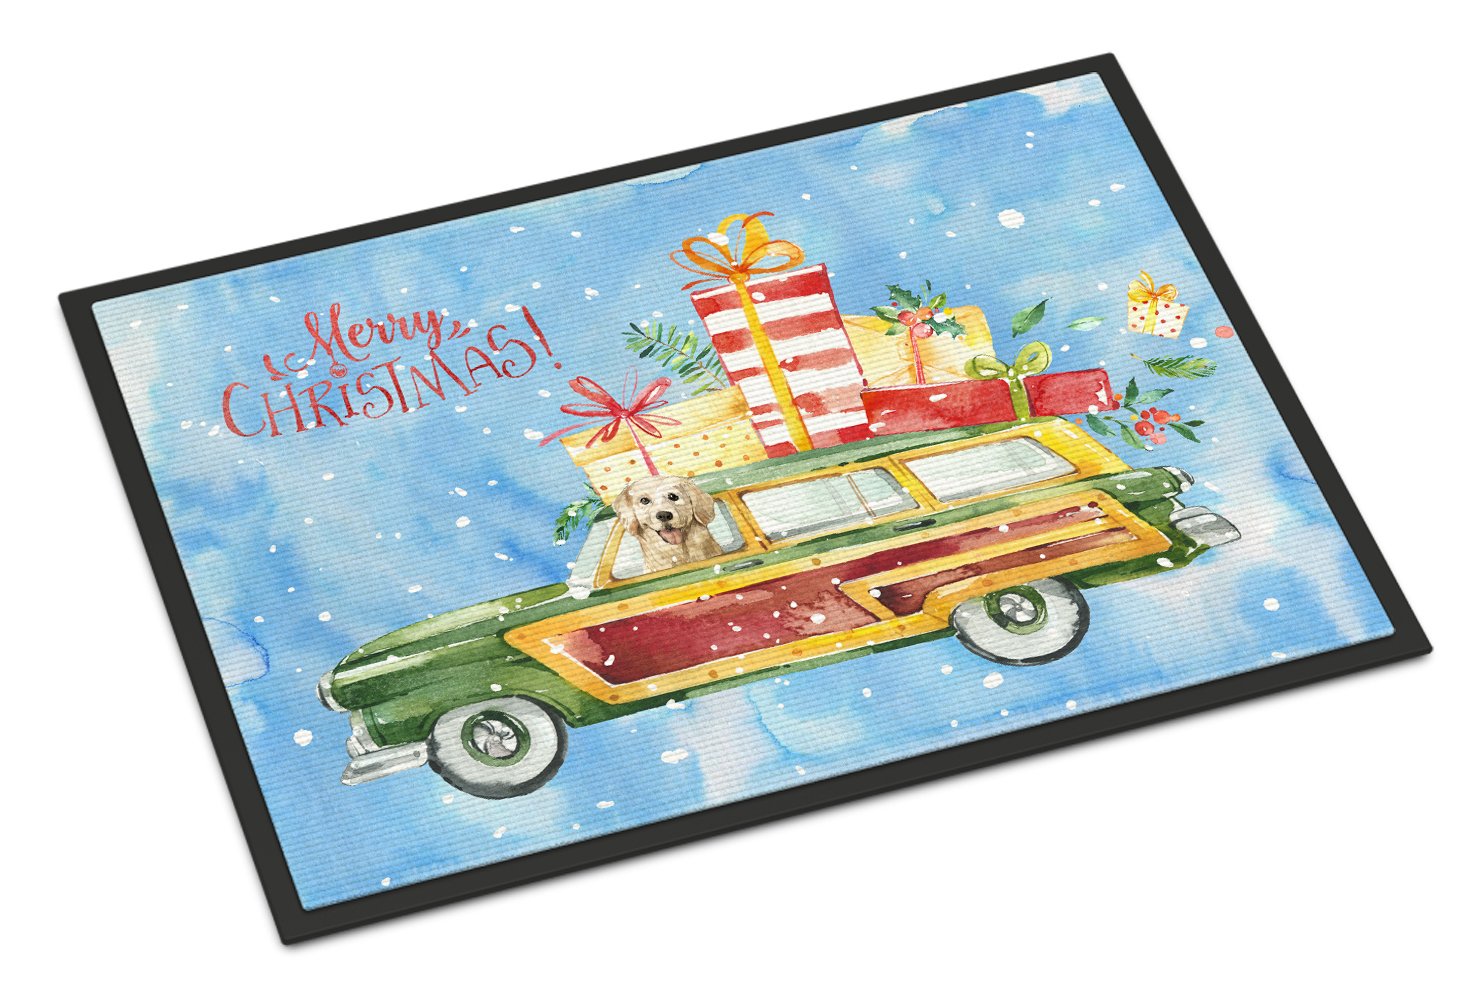 Merry Christmas Golden Retriever Indoor or Outdoor Mat 24x36 CK2407JMAT by Caroline's Treasures